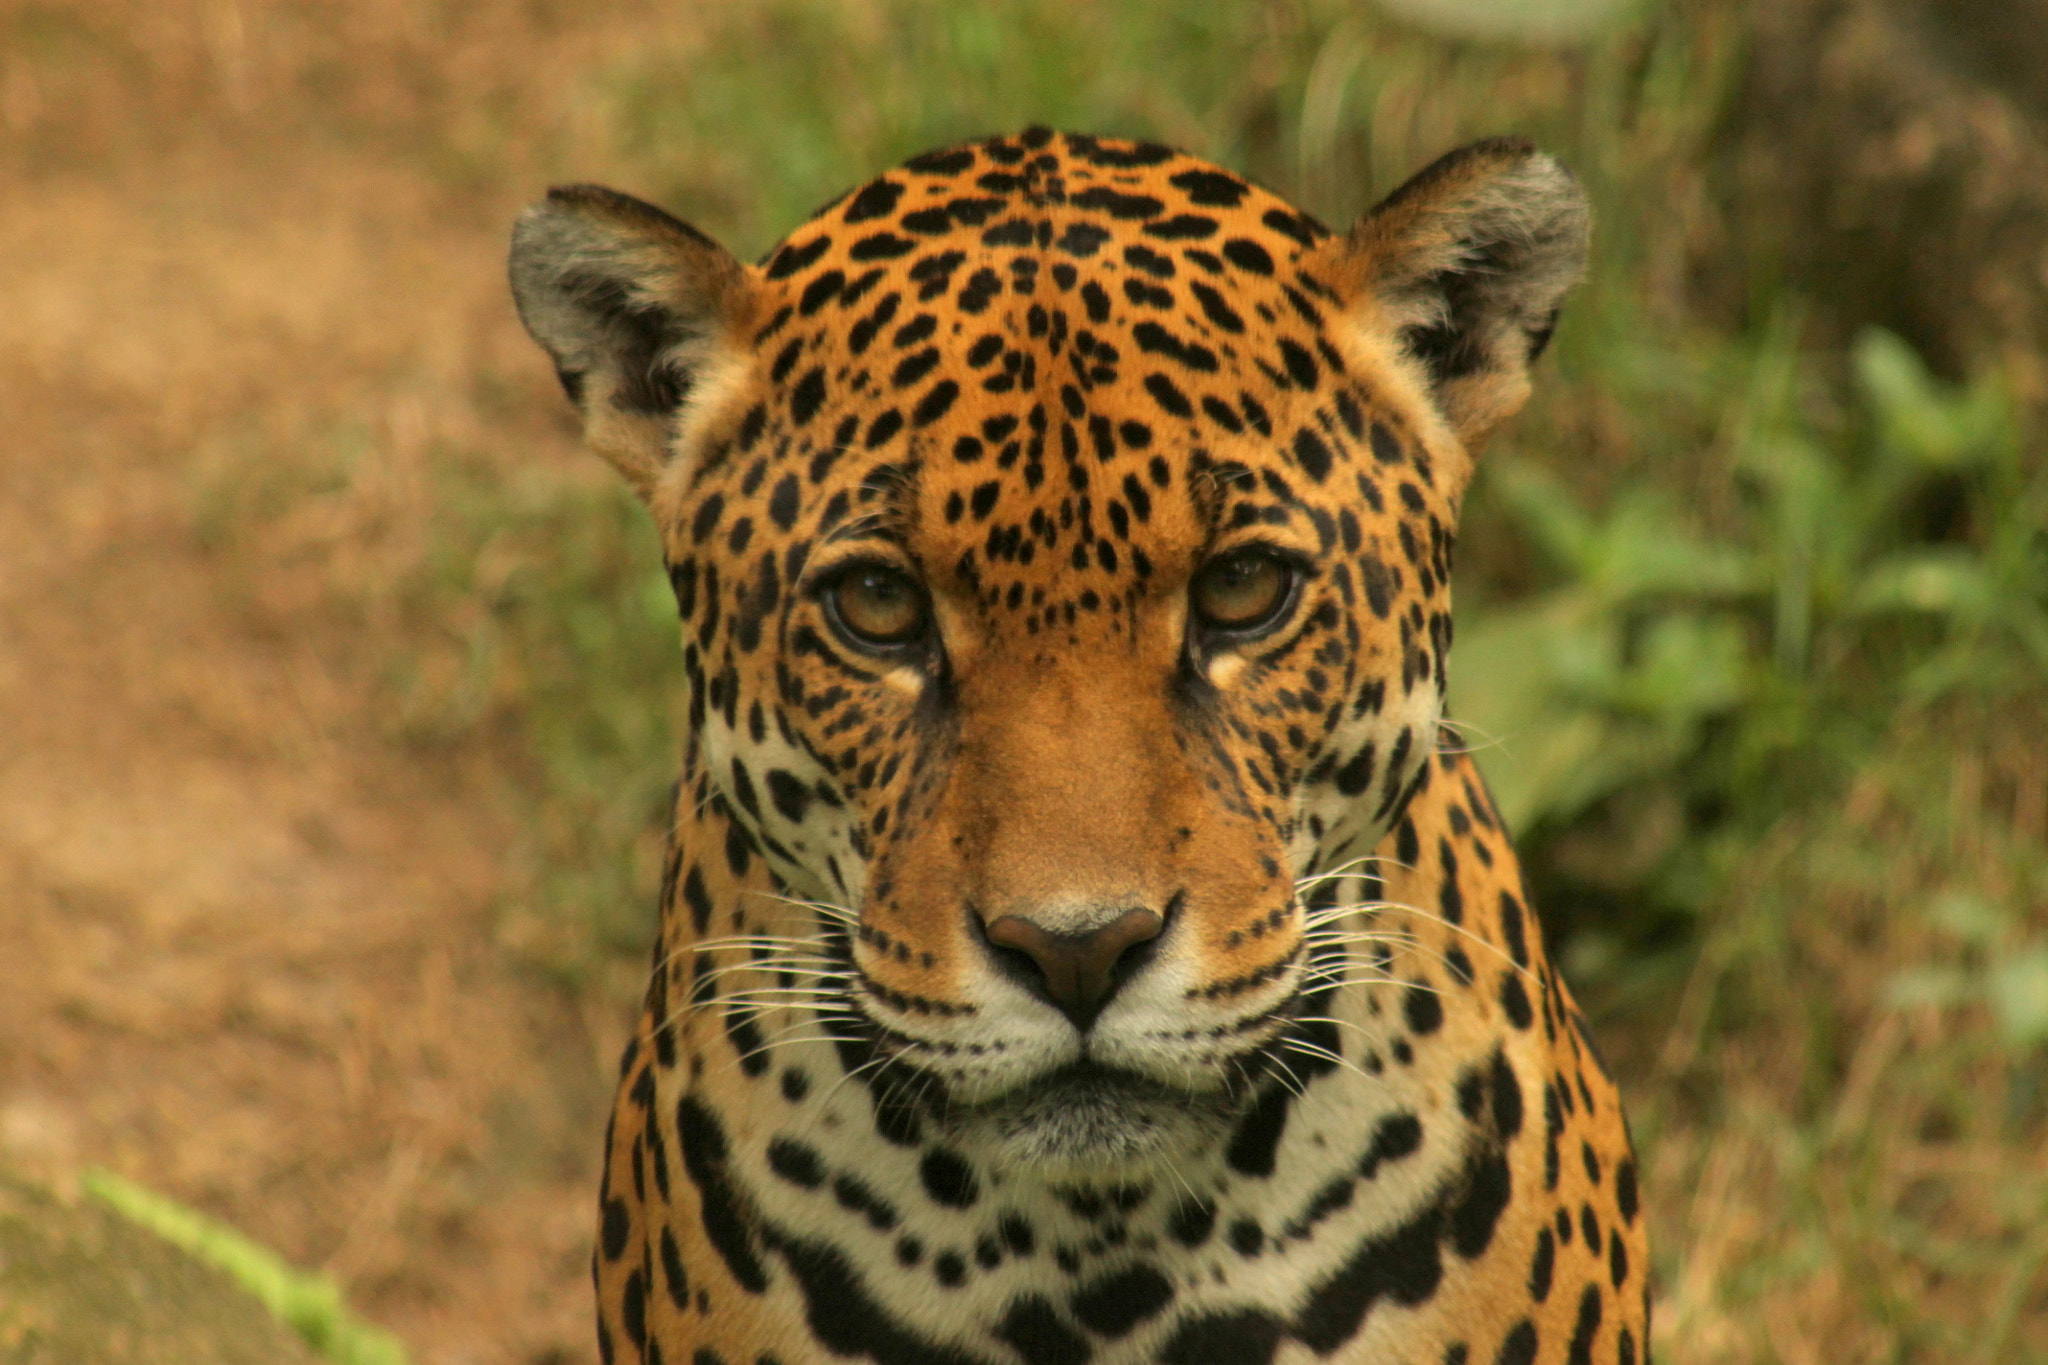 Canon EOS 1100D (EOS Rebel T3 / EOS Kiss X50) sample photo. Portrait of a jaguar photography